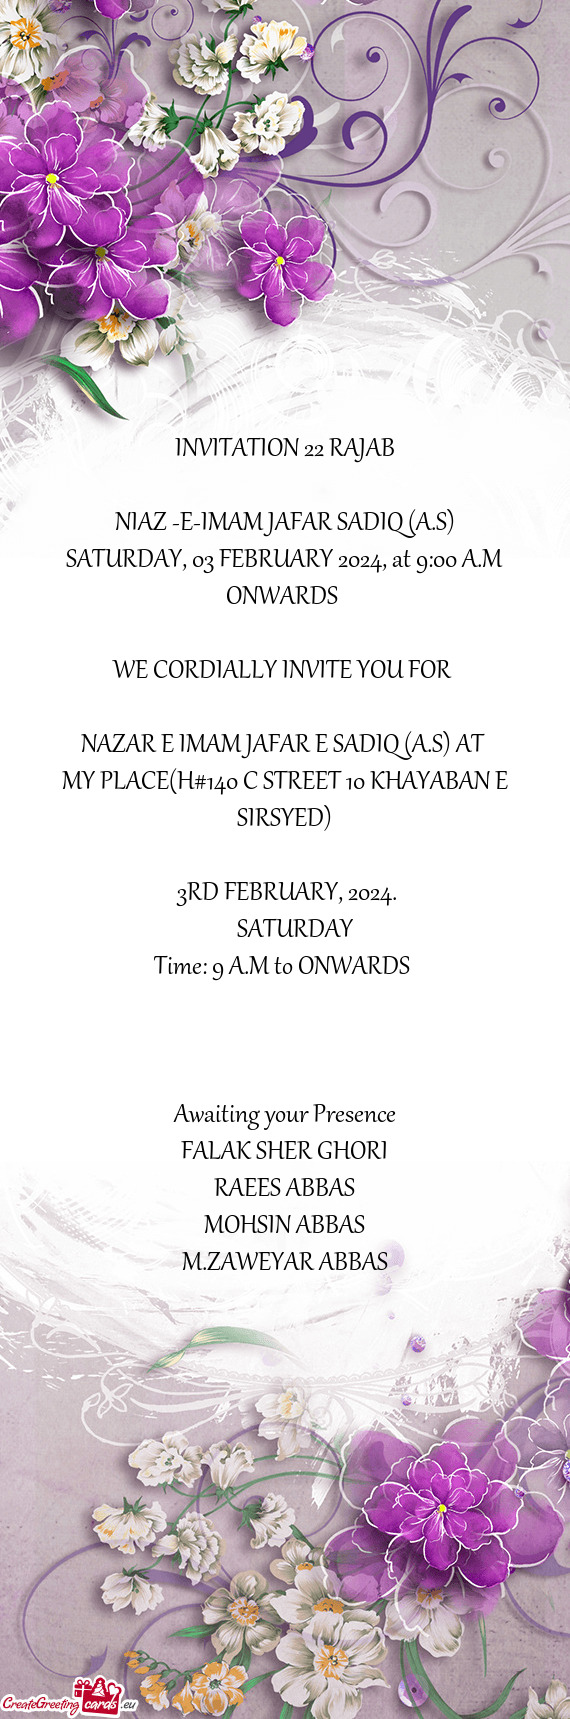 INVITATION 22 RAJAB